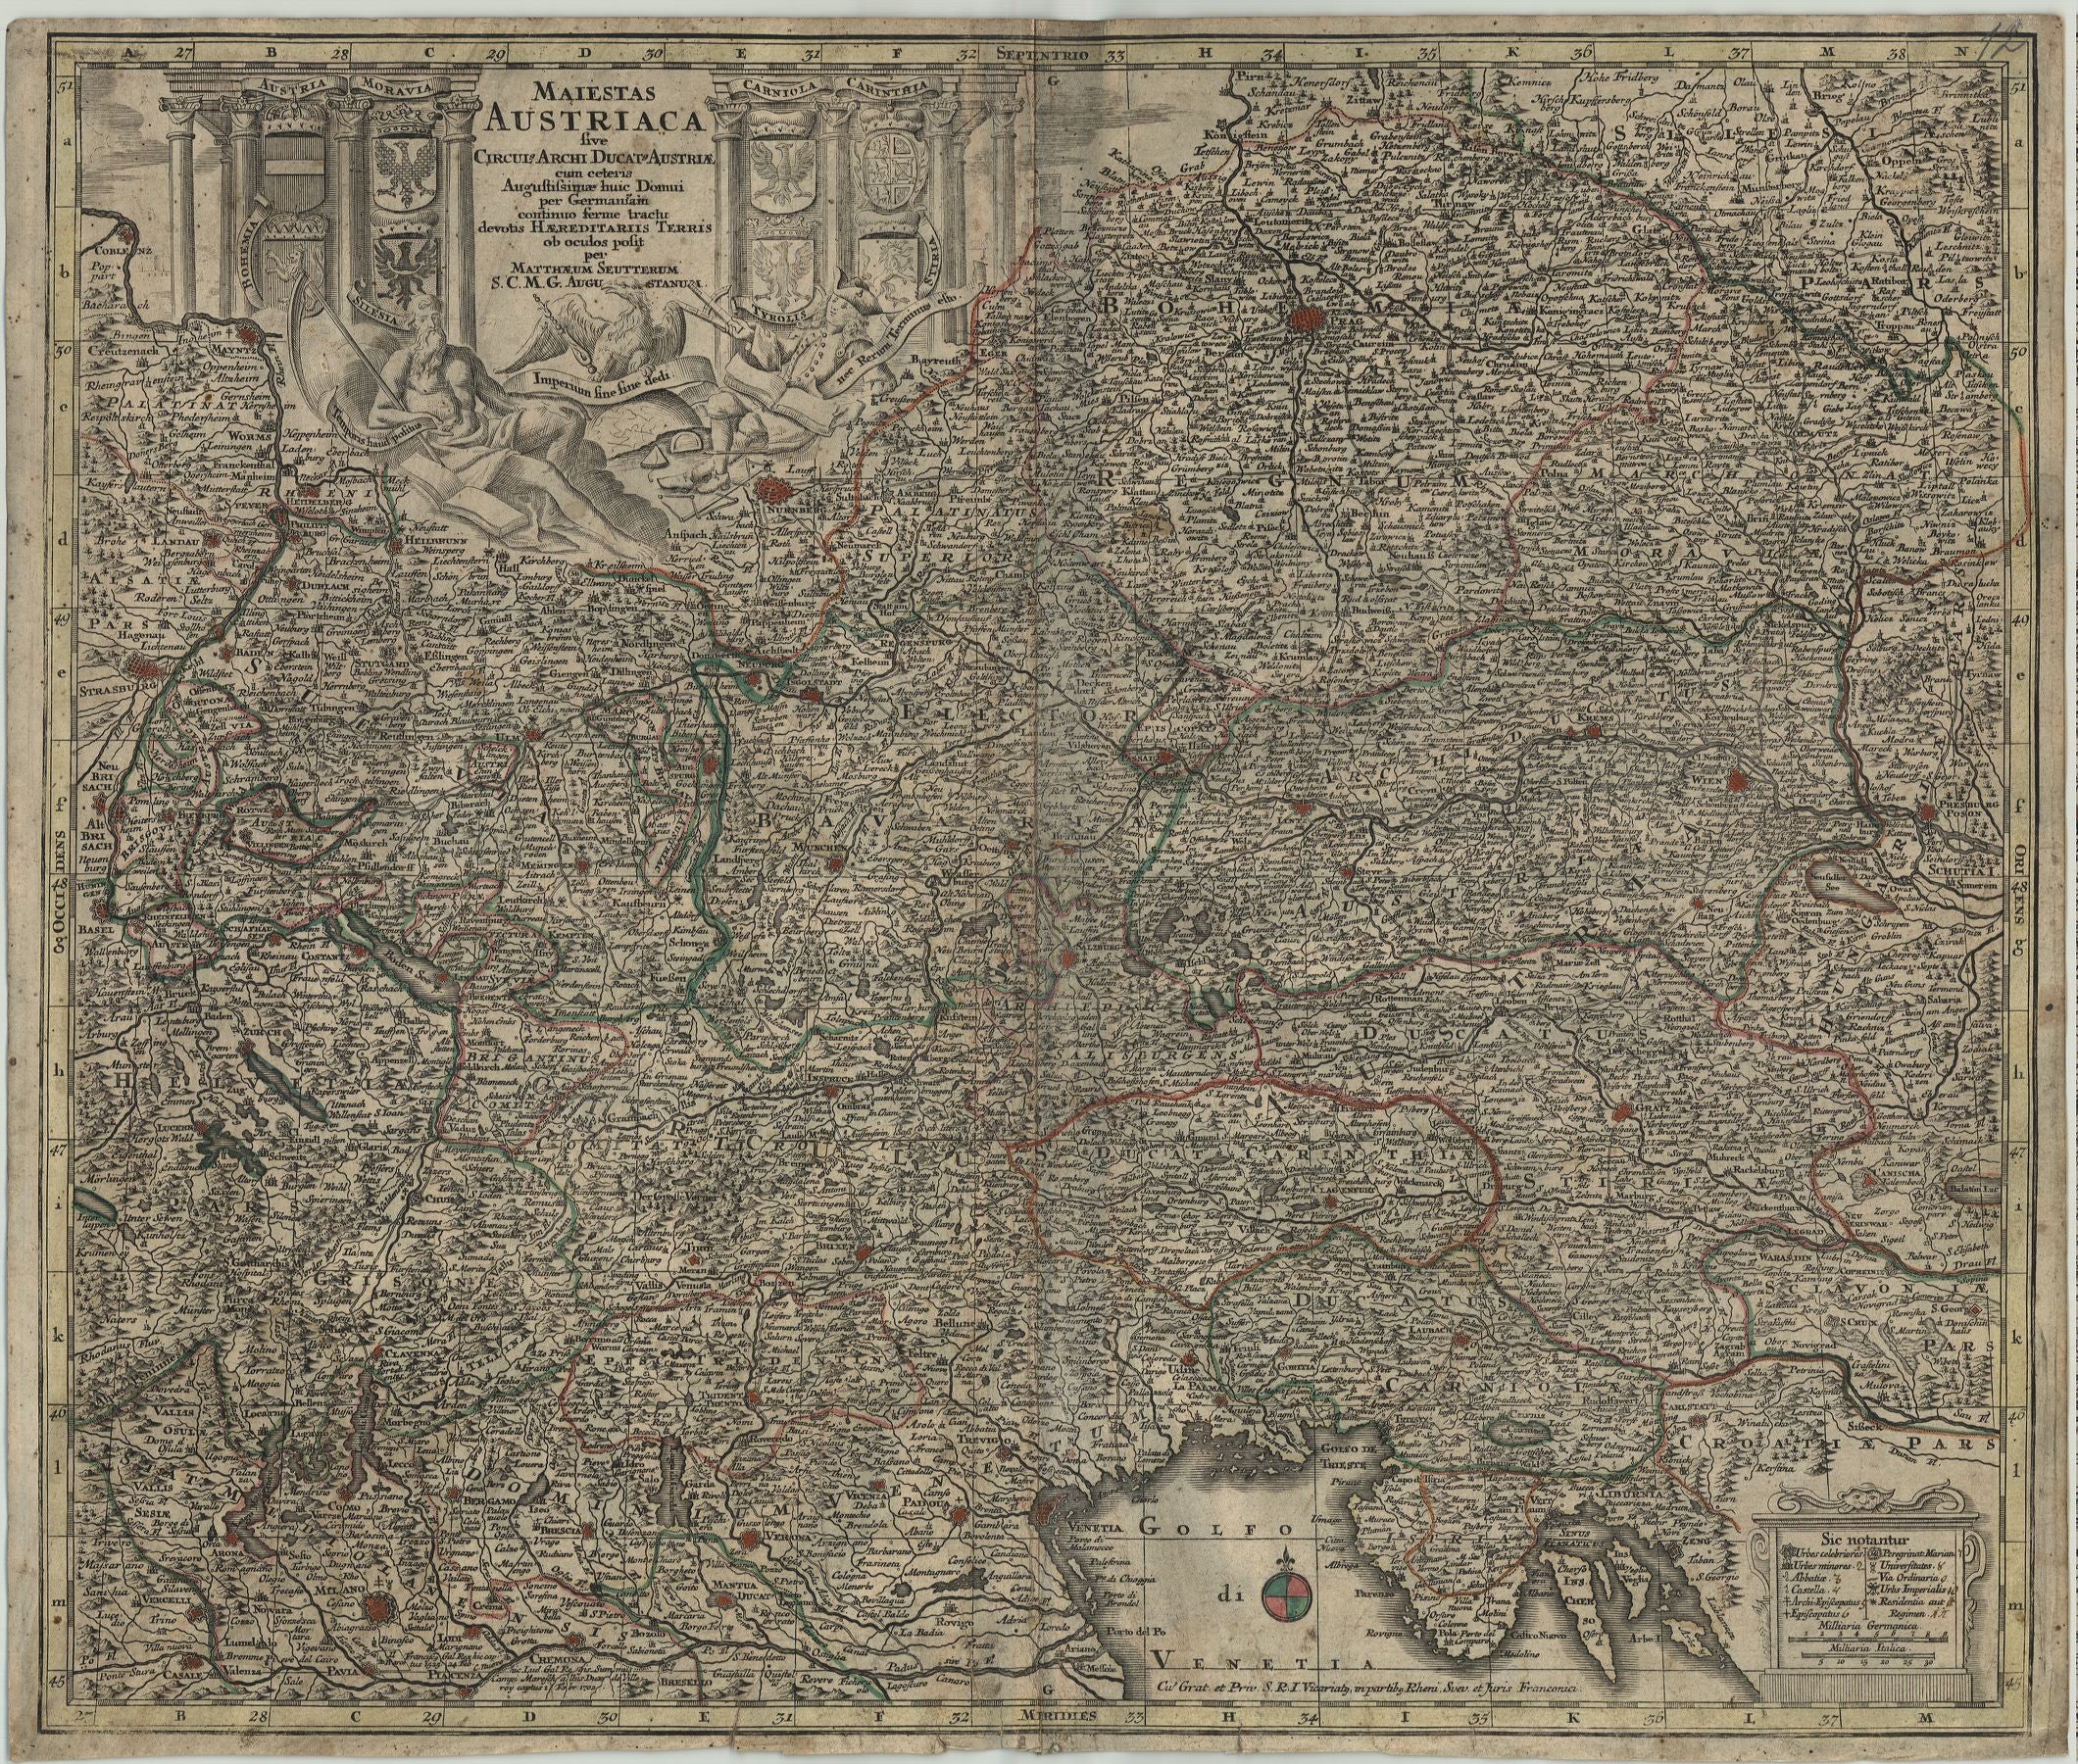 Österreich in der Zeit um 1730 von Matthias Seutter